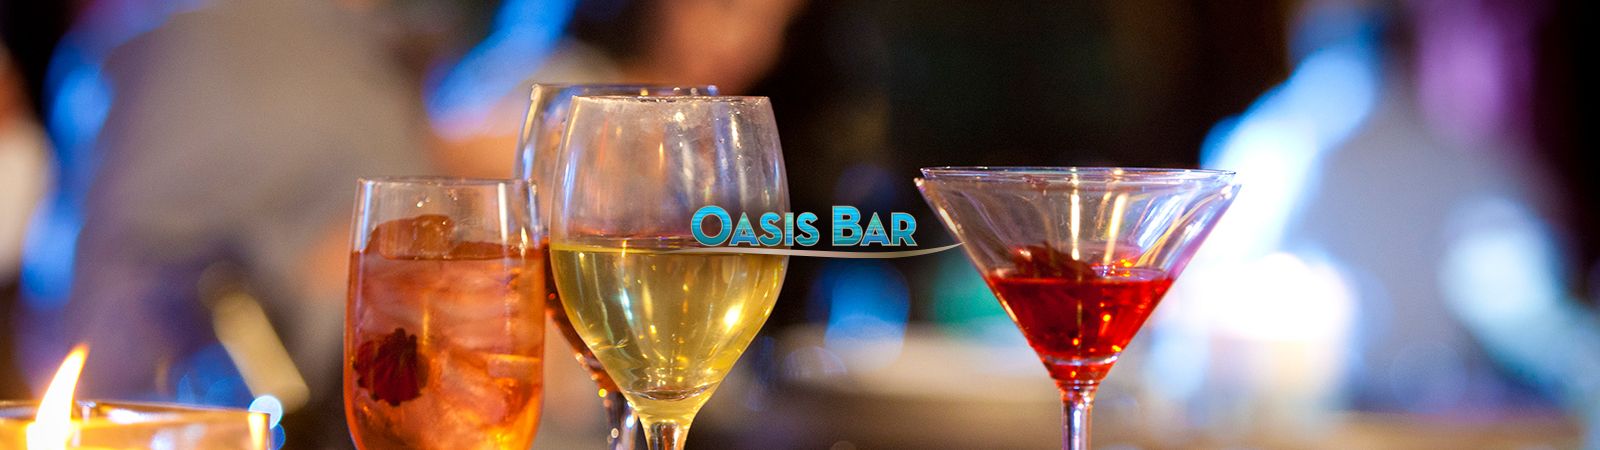 Oasis Bar at Casino Del Sol